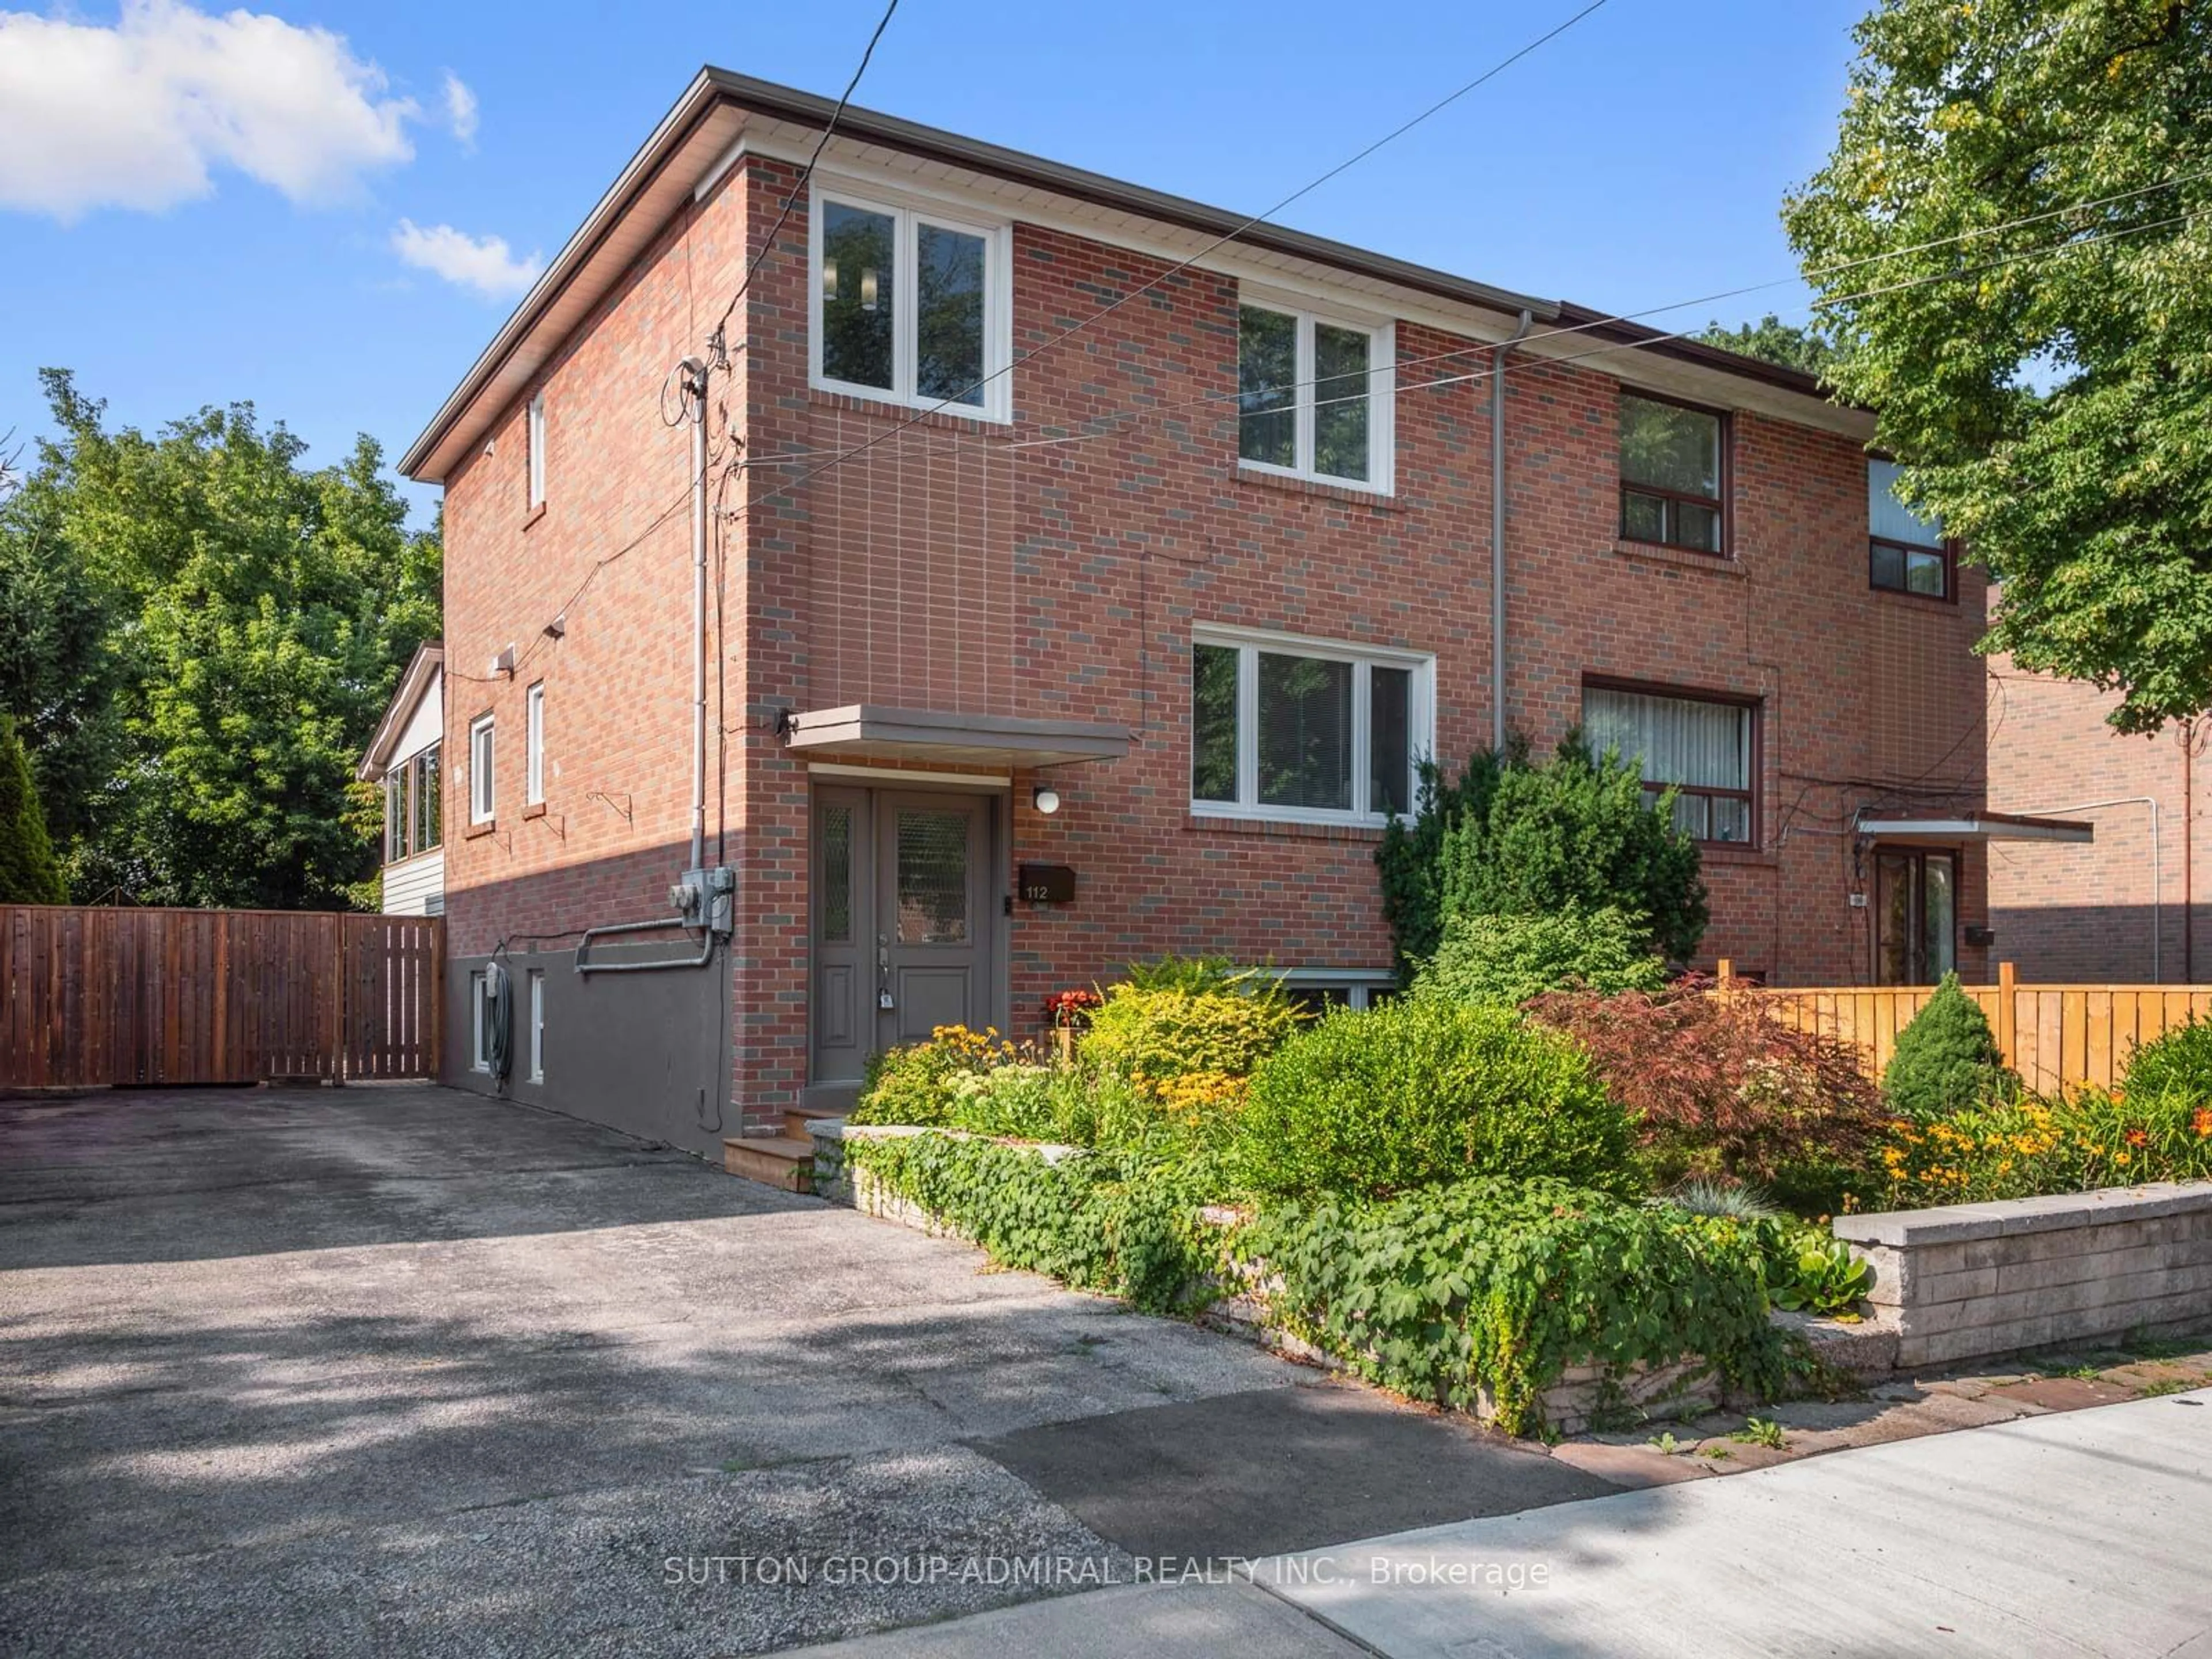 Home with brick exterior material for 112 Edinborough Crt, Toronto Ontario M6N 2E8